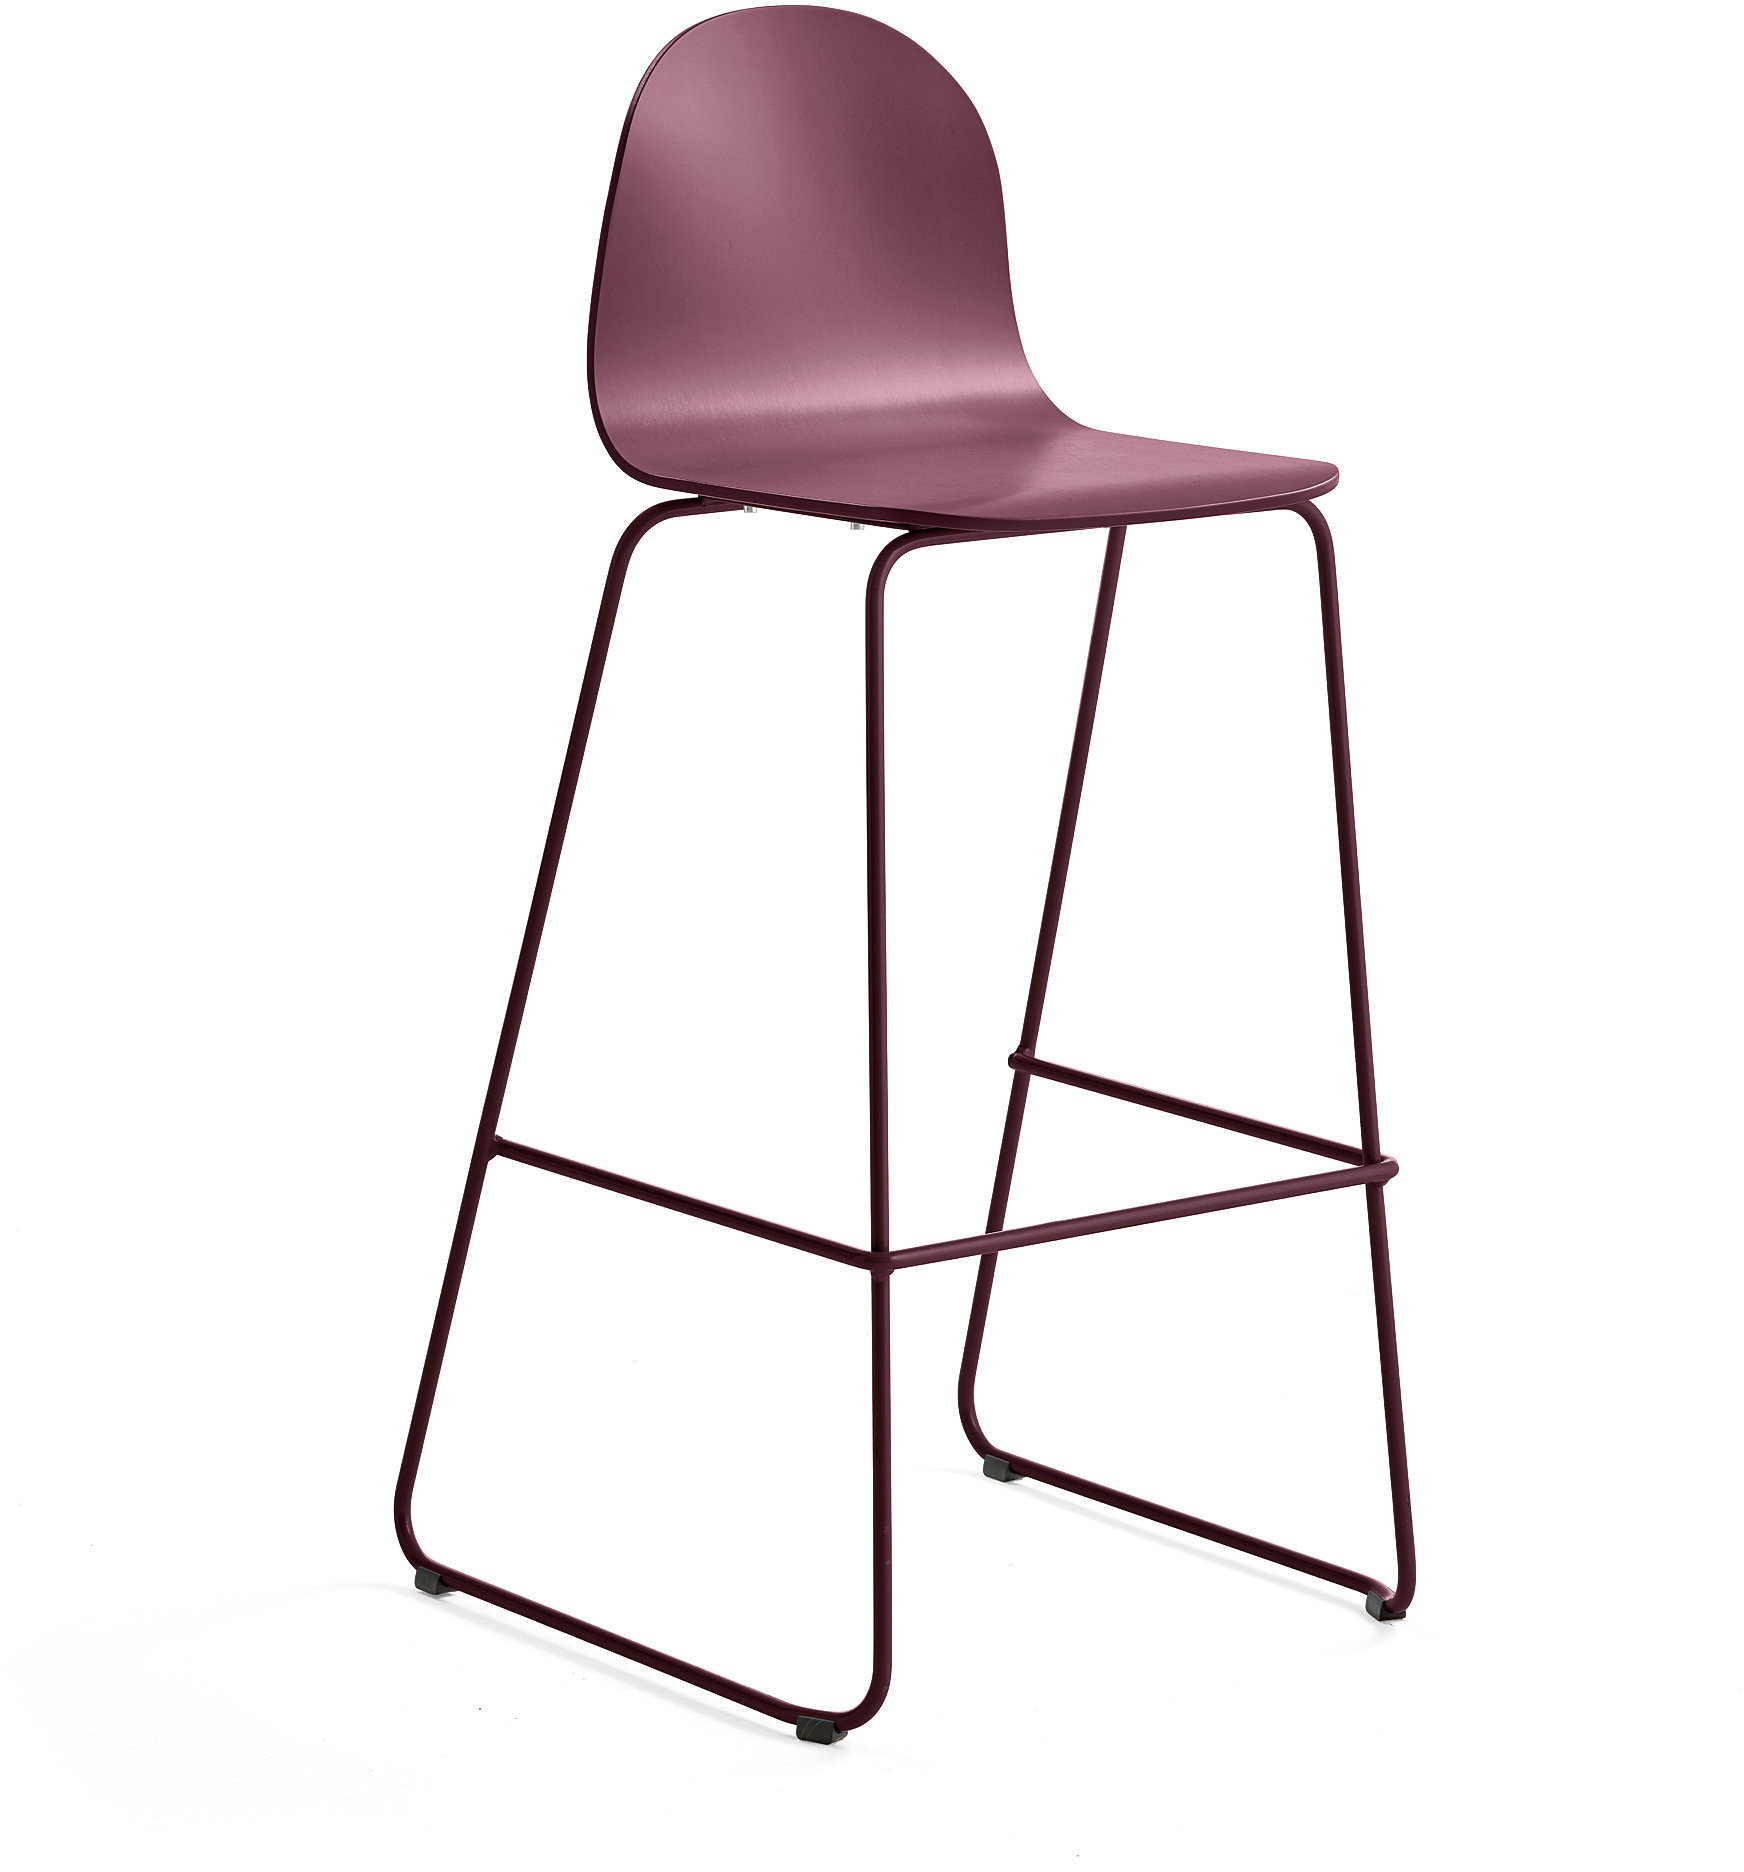 AJ Produkty Krzesło barowe GANDER, płozy, siedzisko 790 mm, lakierowany, ciemnoczerwony